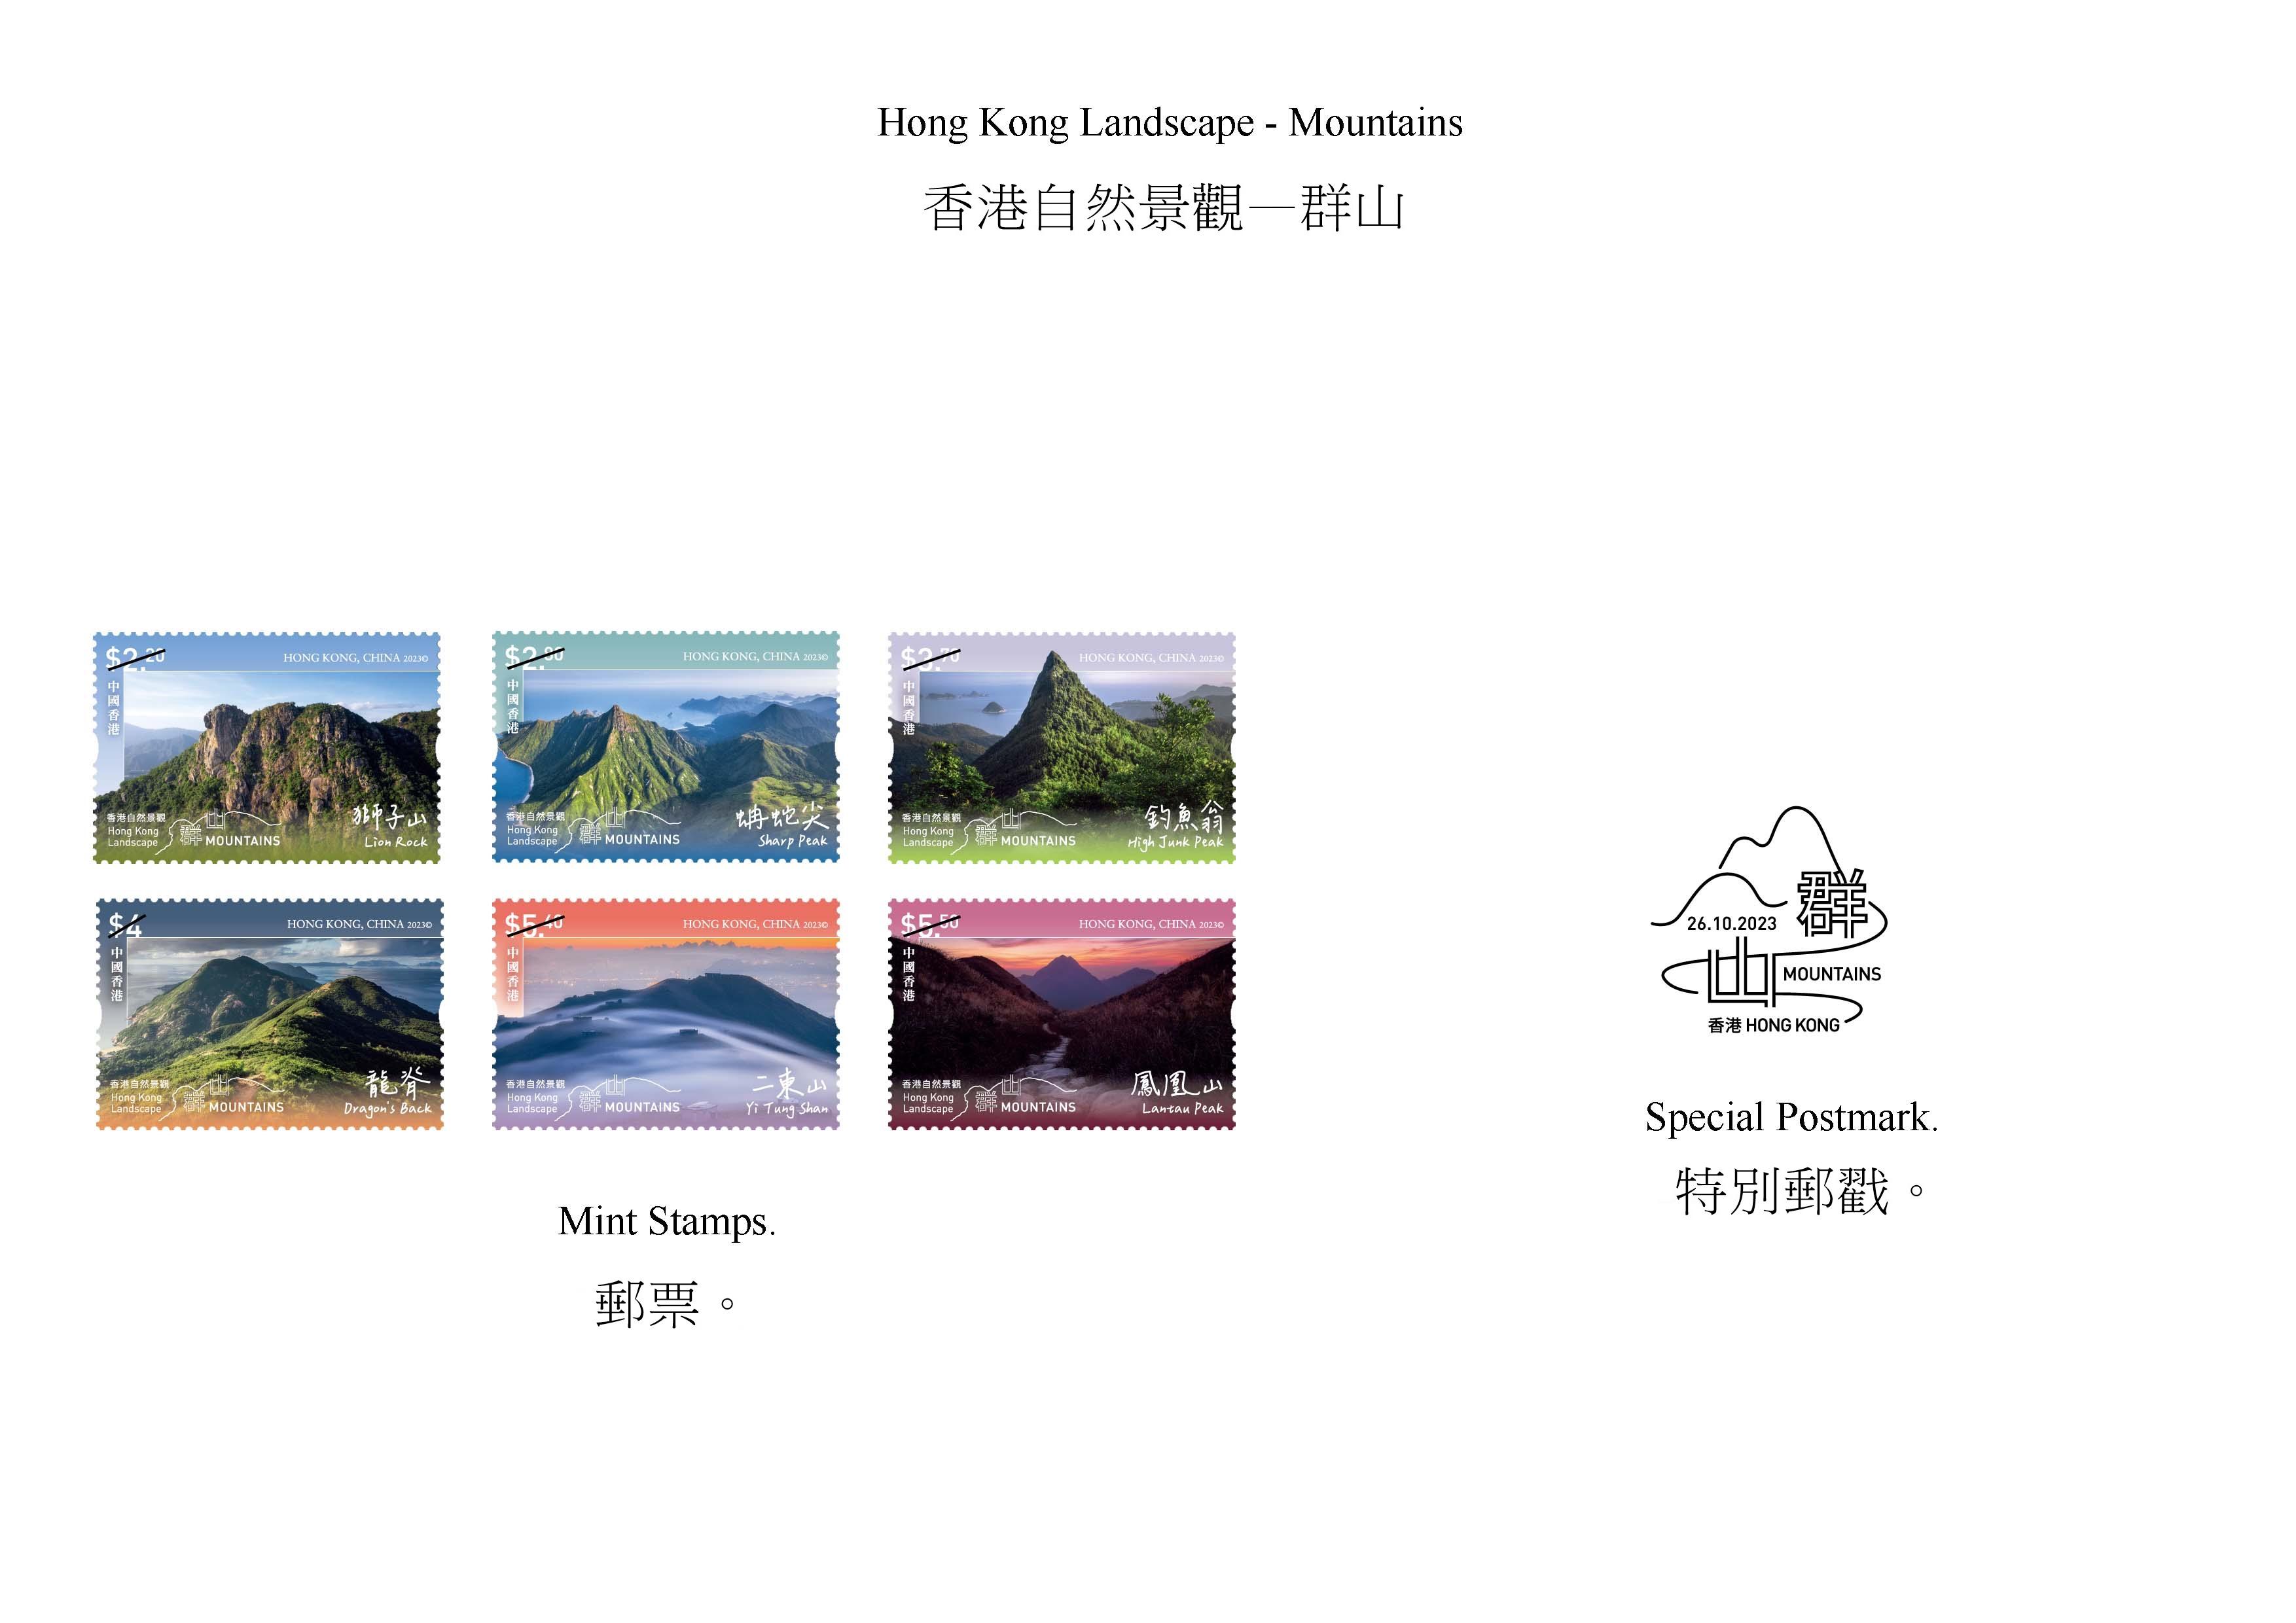 香港邮政十月二十六日（星期四）发行以「香港自然景观——群山」为题的特别邮票及相关集邮品。图示邮票和特别邮戳。